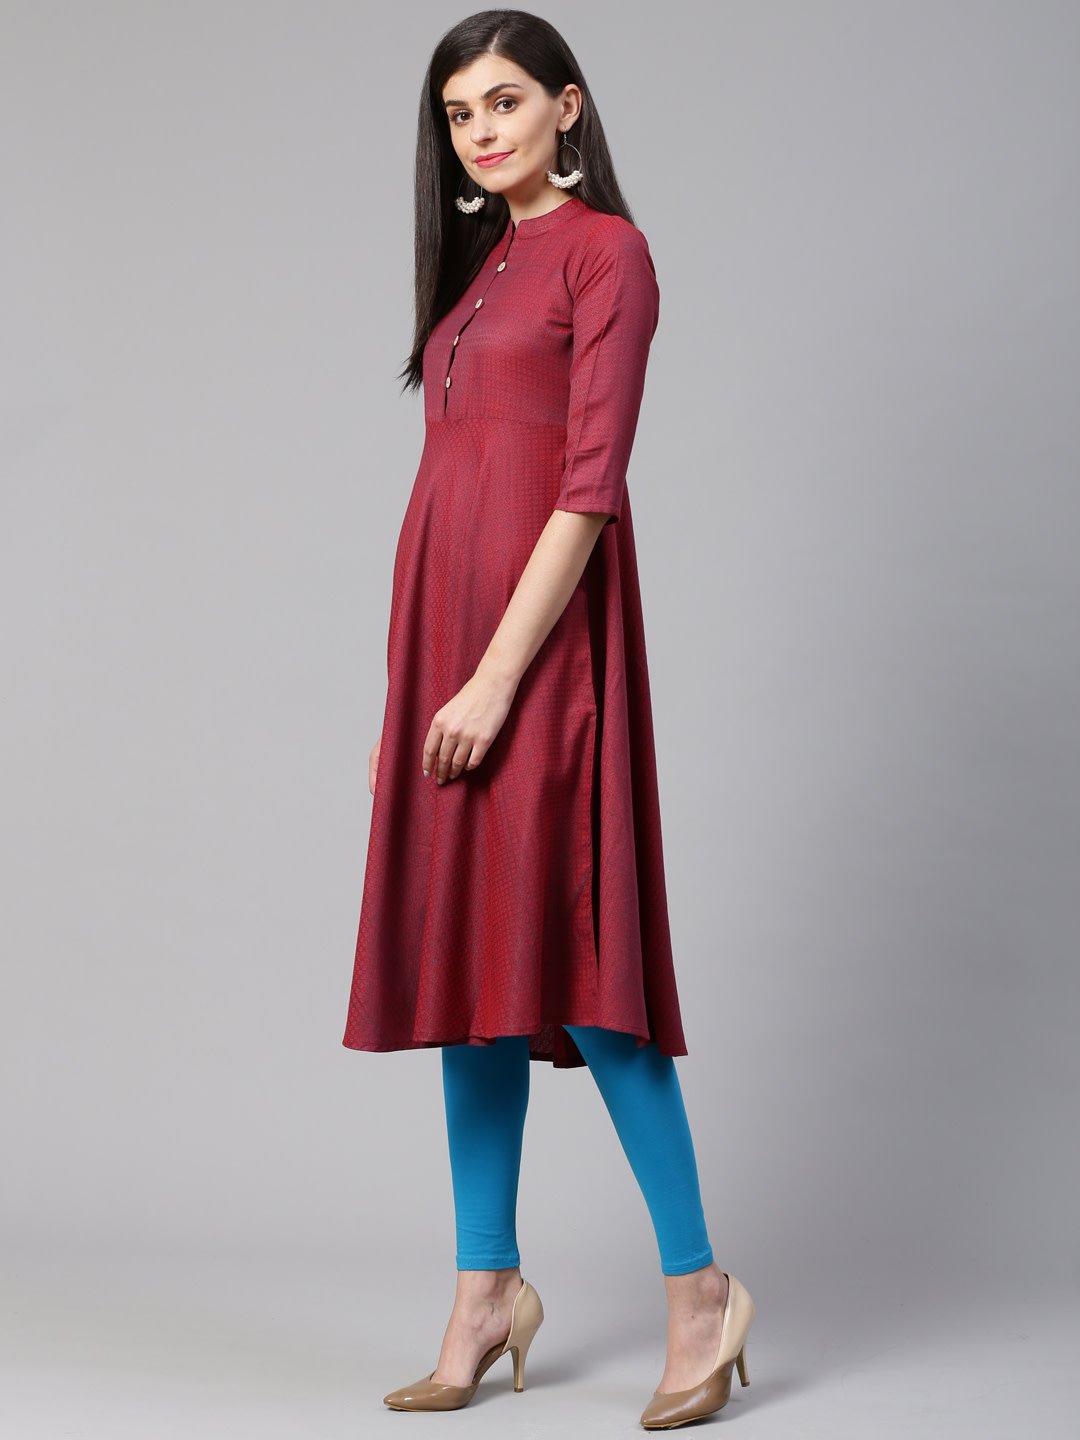 Women's Maroon Woven Design Jacquard Weave A Line Kurta - Jompers